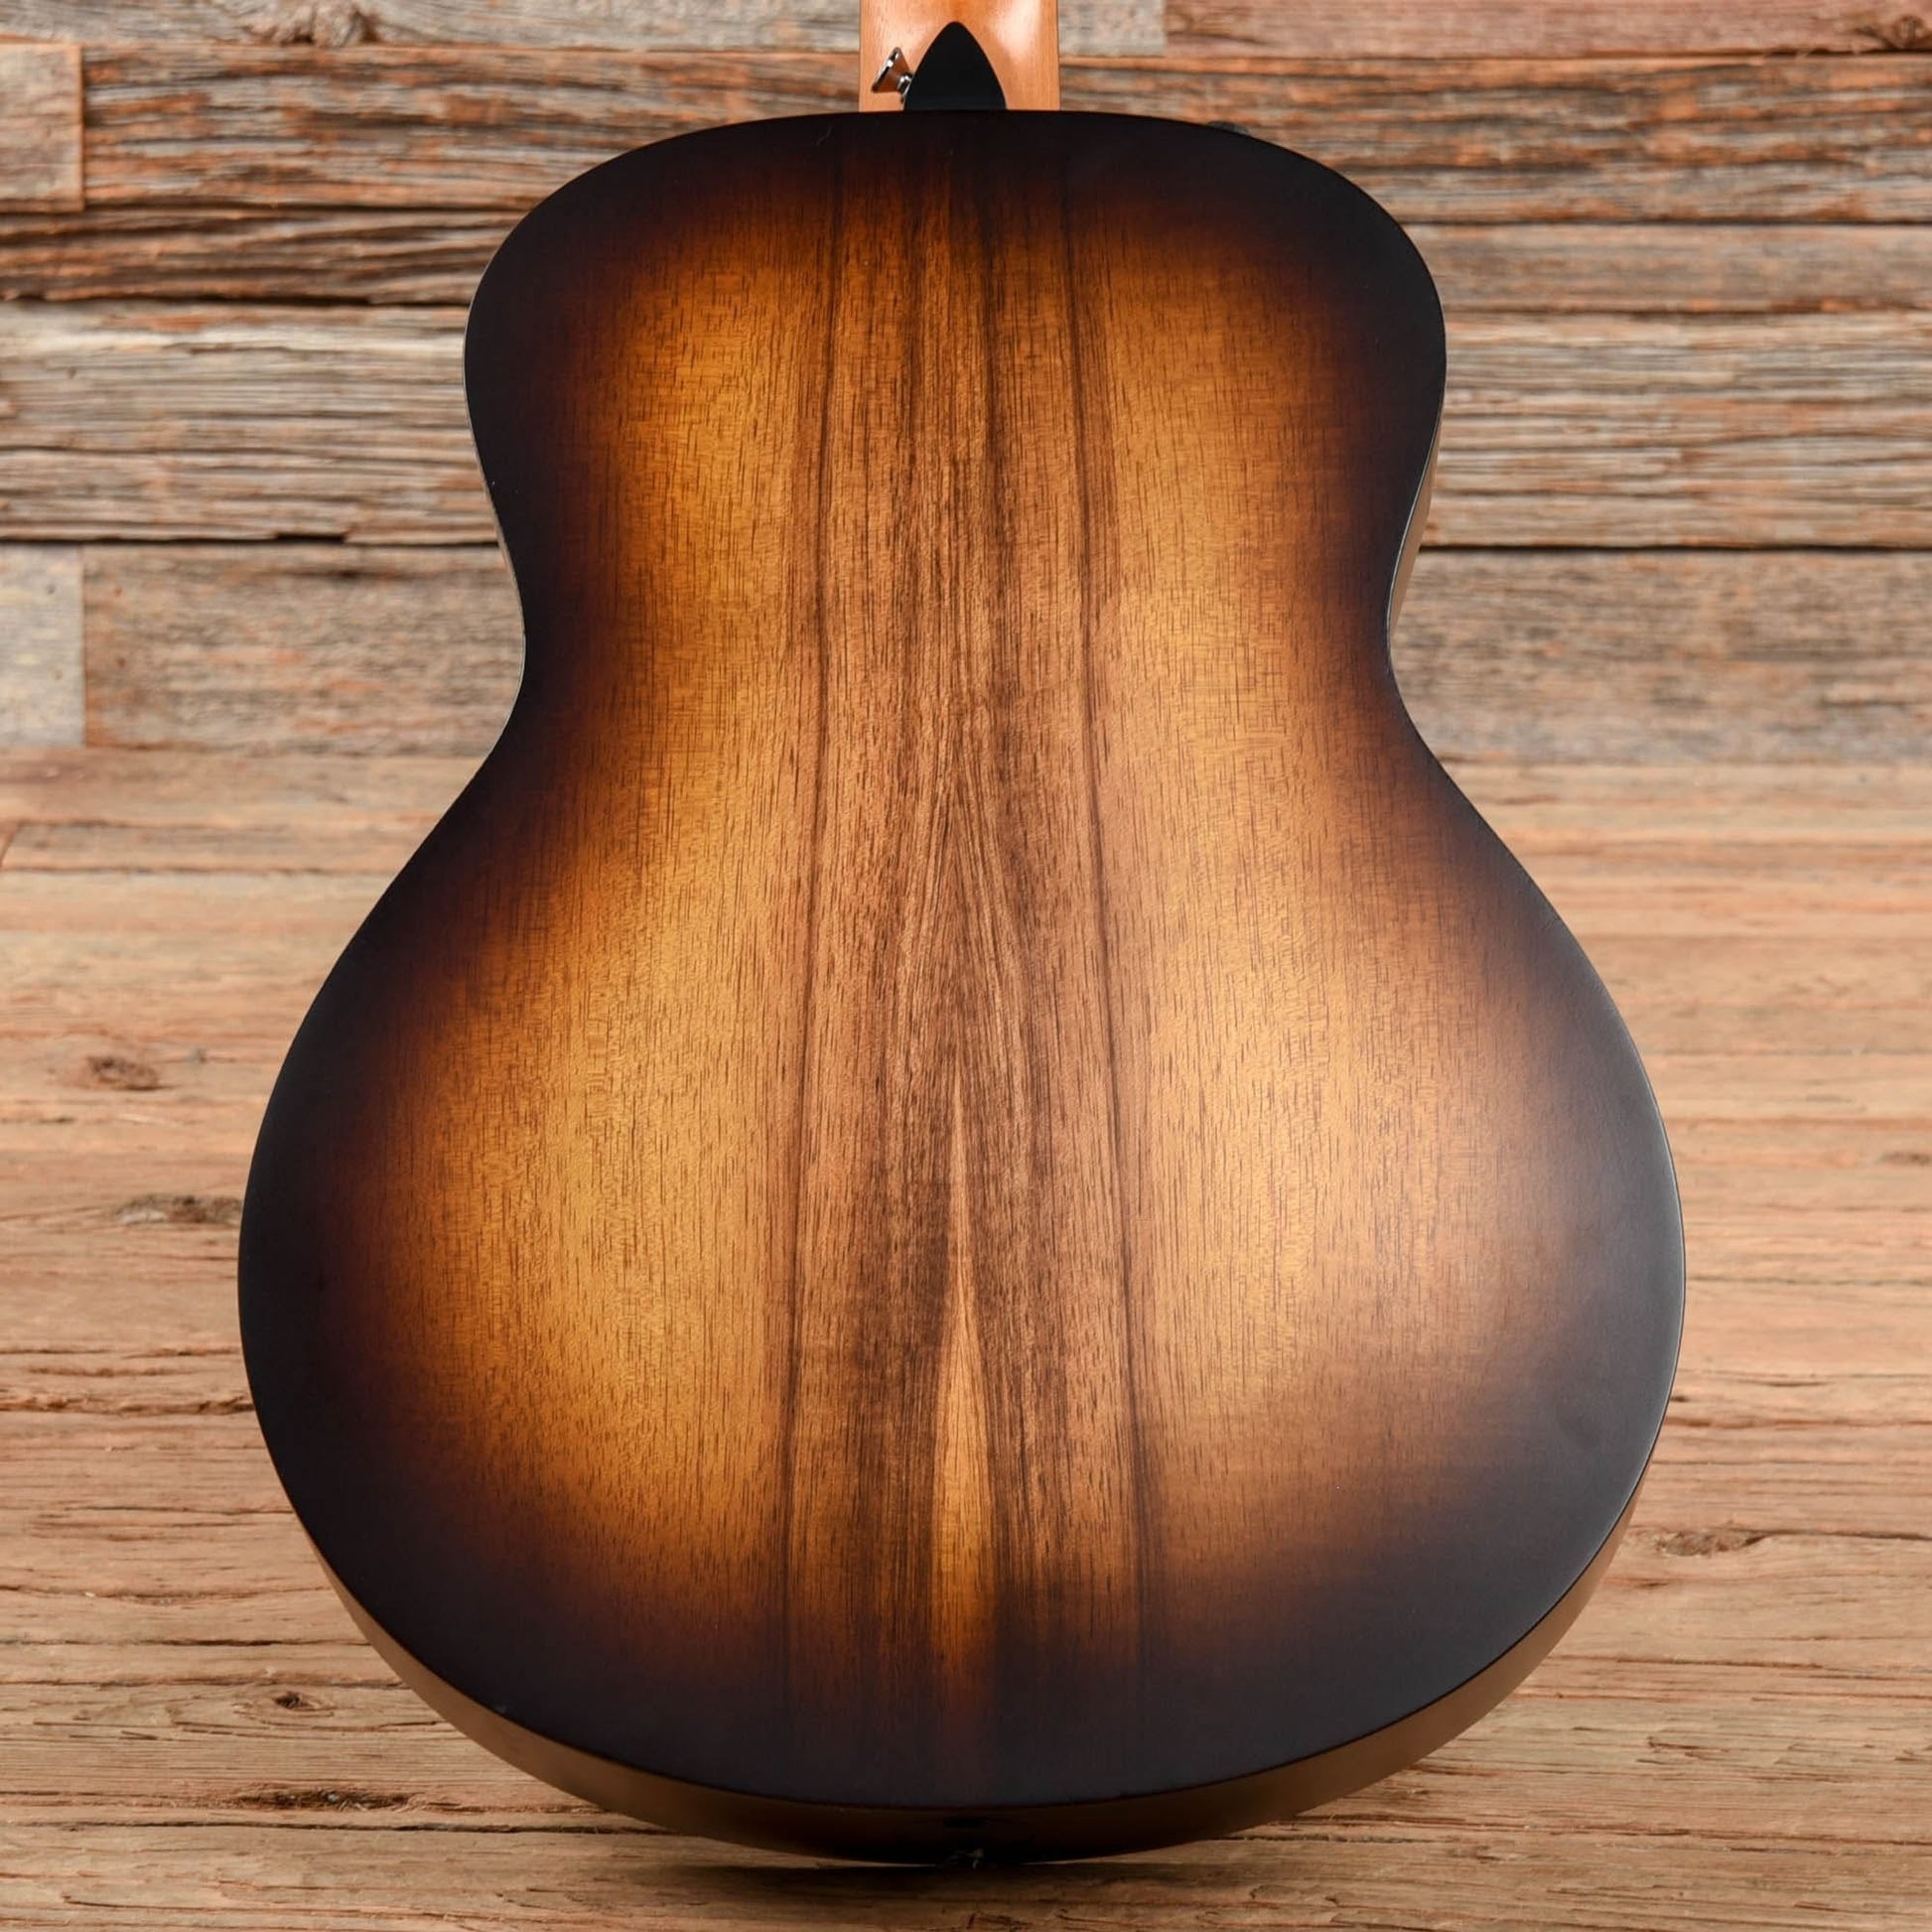 Taylor GS Mini-e Koa Plus Shaded Edgeburst 2022 Acoustic Guitars / Mini/Travel